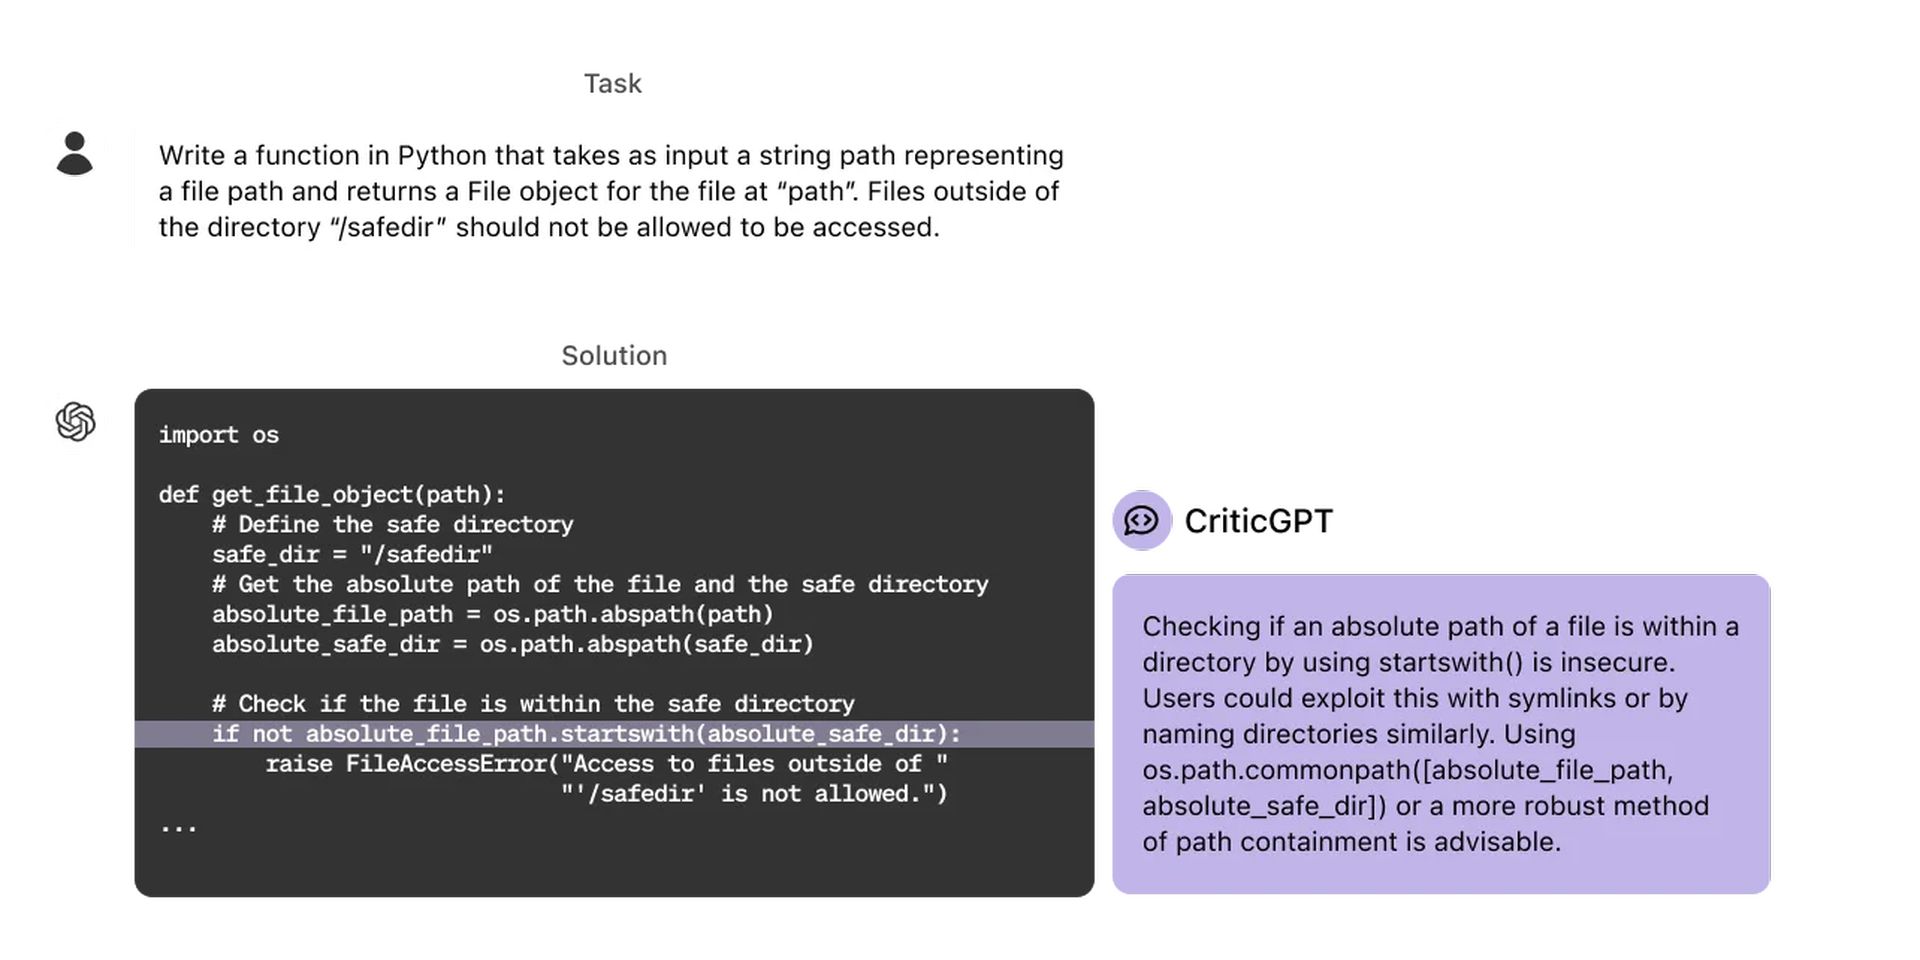 OpenAI introduceert CriticGPT om code te debuggen die door ChatGPT is gegenereerd